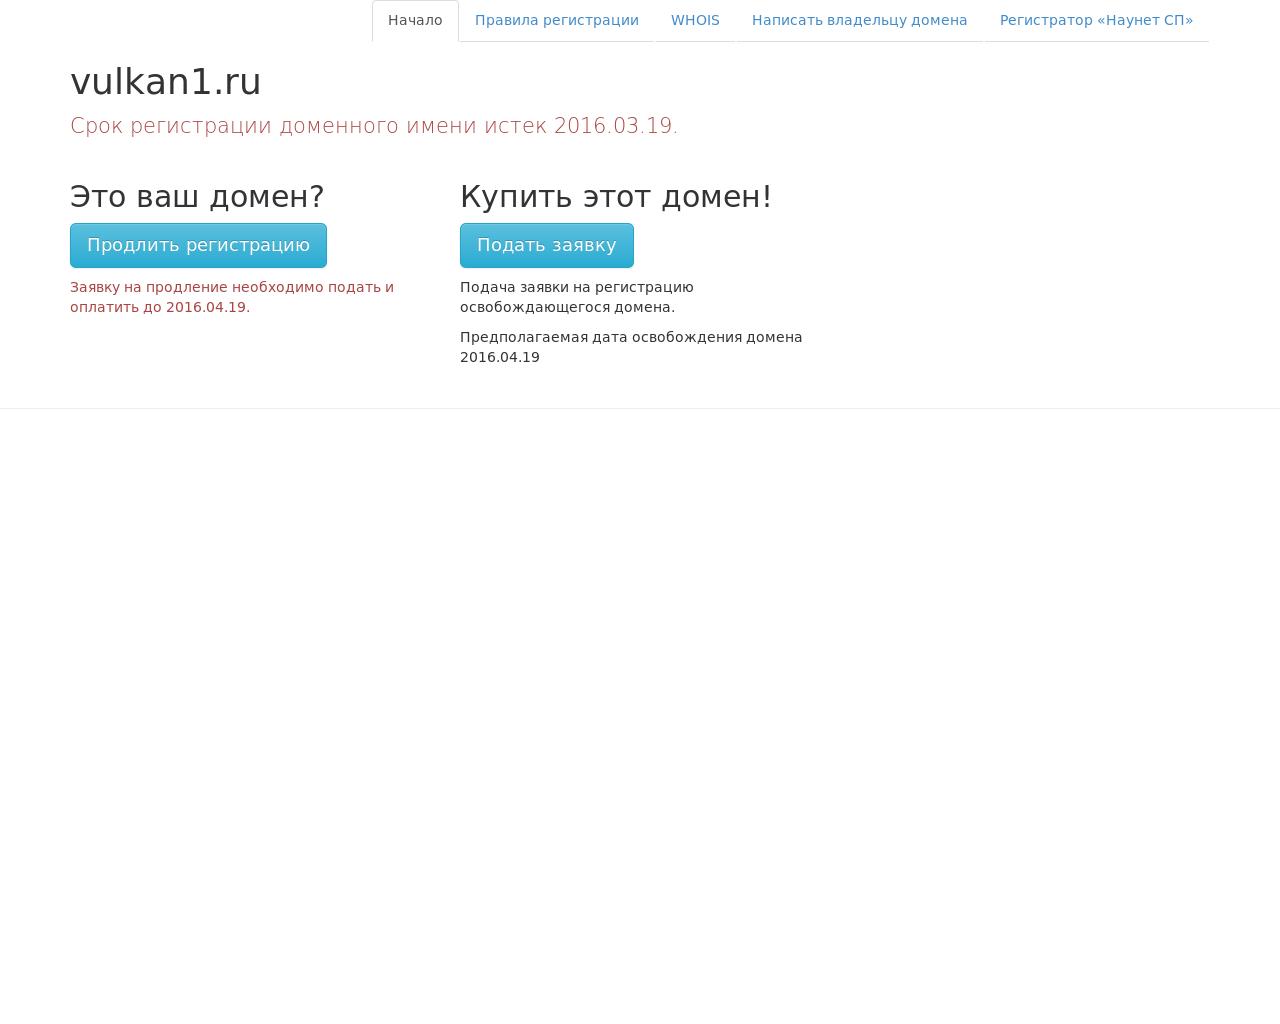 Изображение сайта vulkan1.ru в разрешении 1280x1024